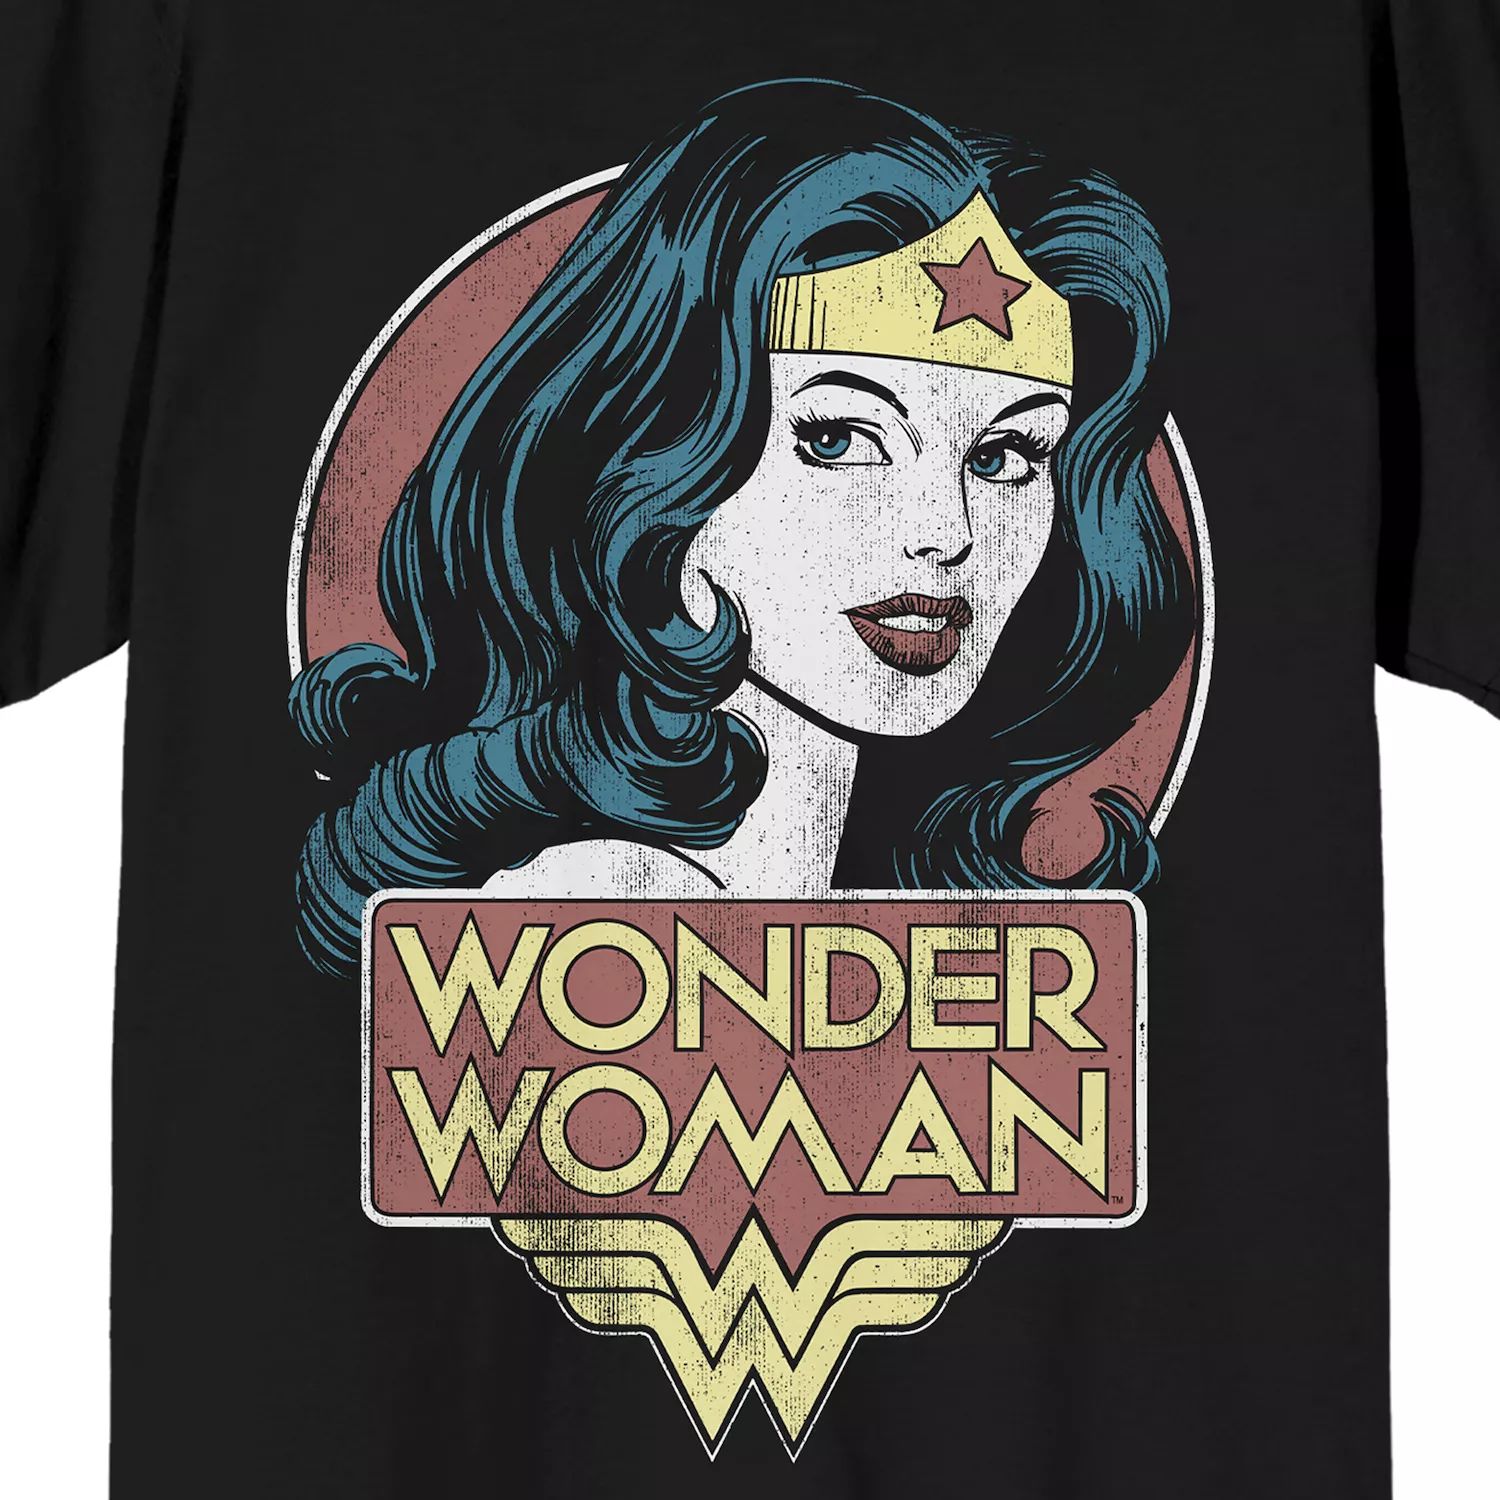 Мужская футболка Wonder Woman с портретом Licensed Character